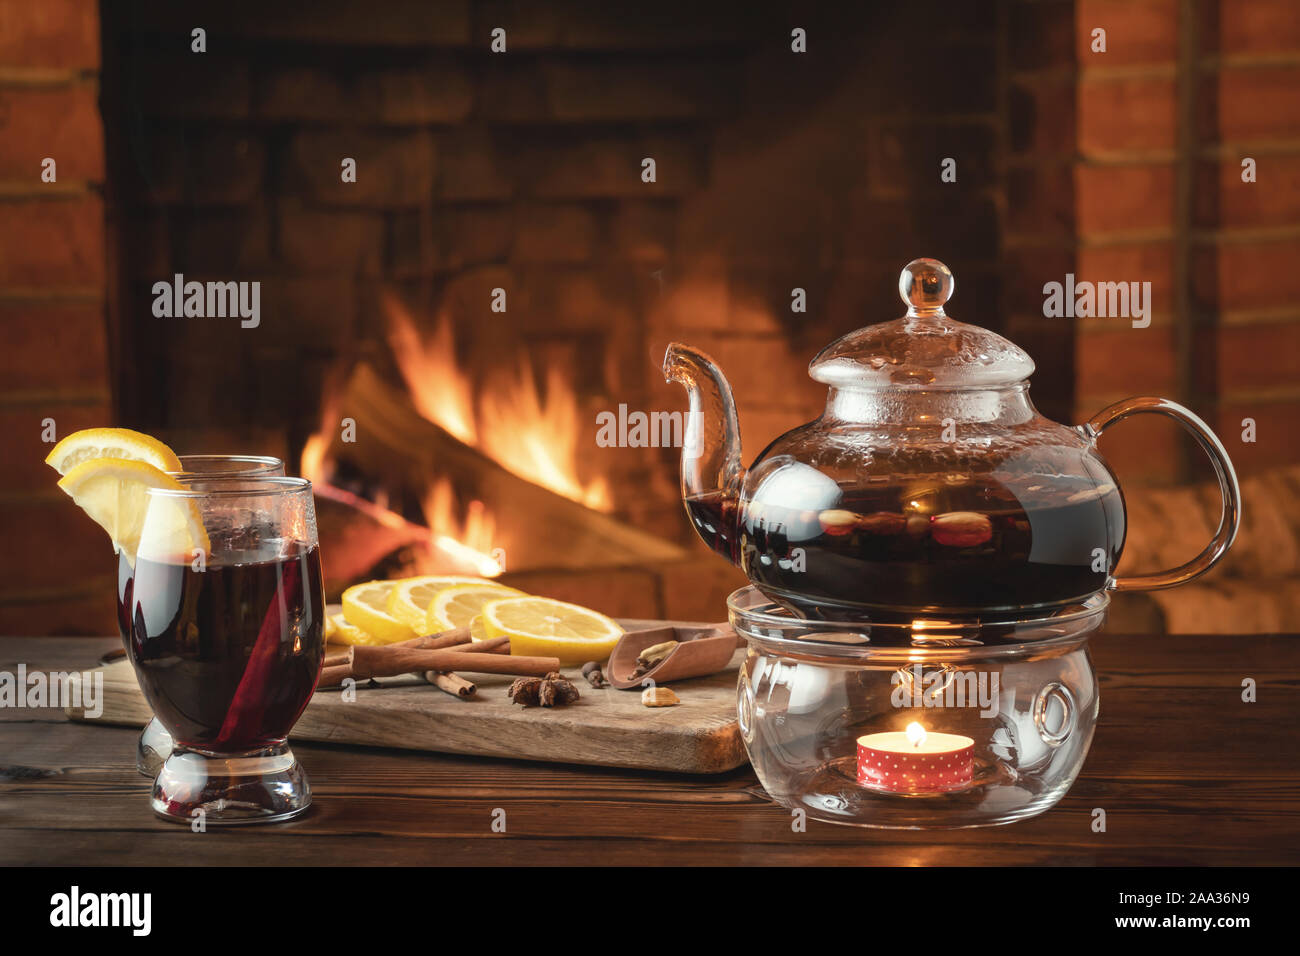 Zwei Gläser von Glühwein und Teekanne auf einem holztisch vor einem brennenden Kamin. Stockfoto